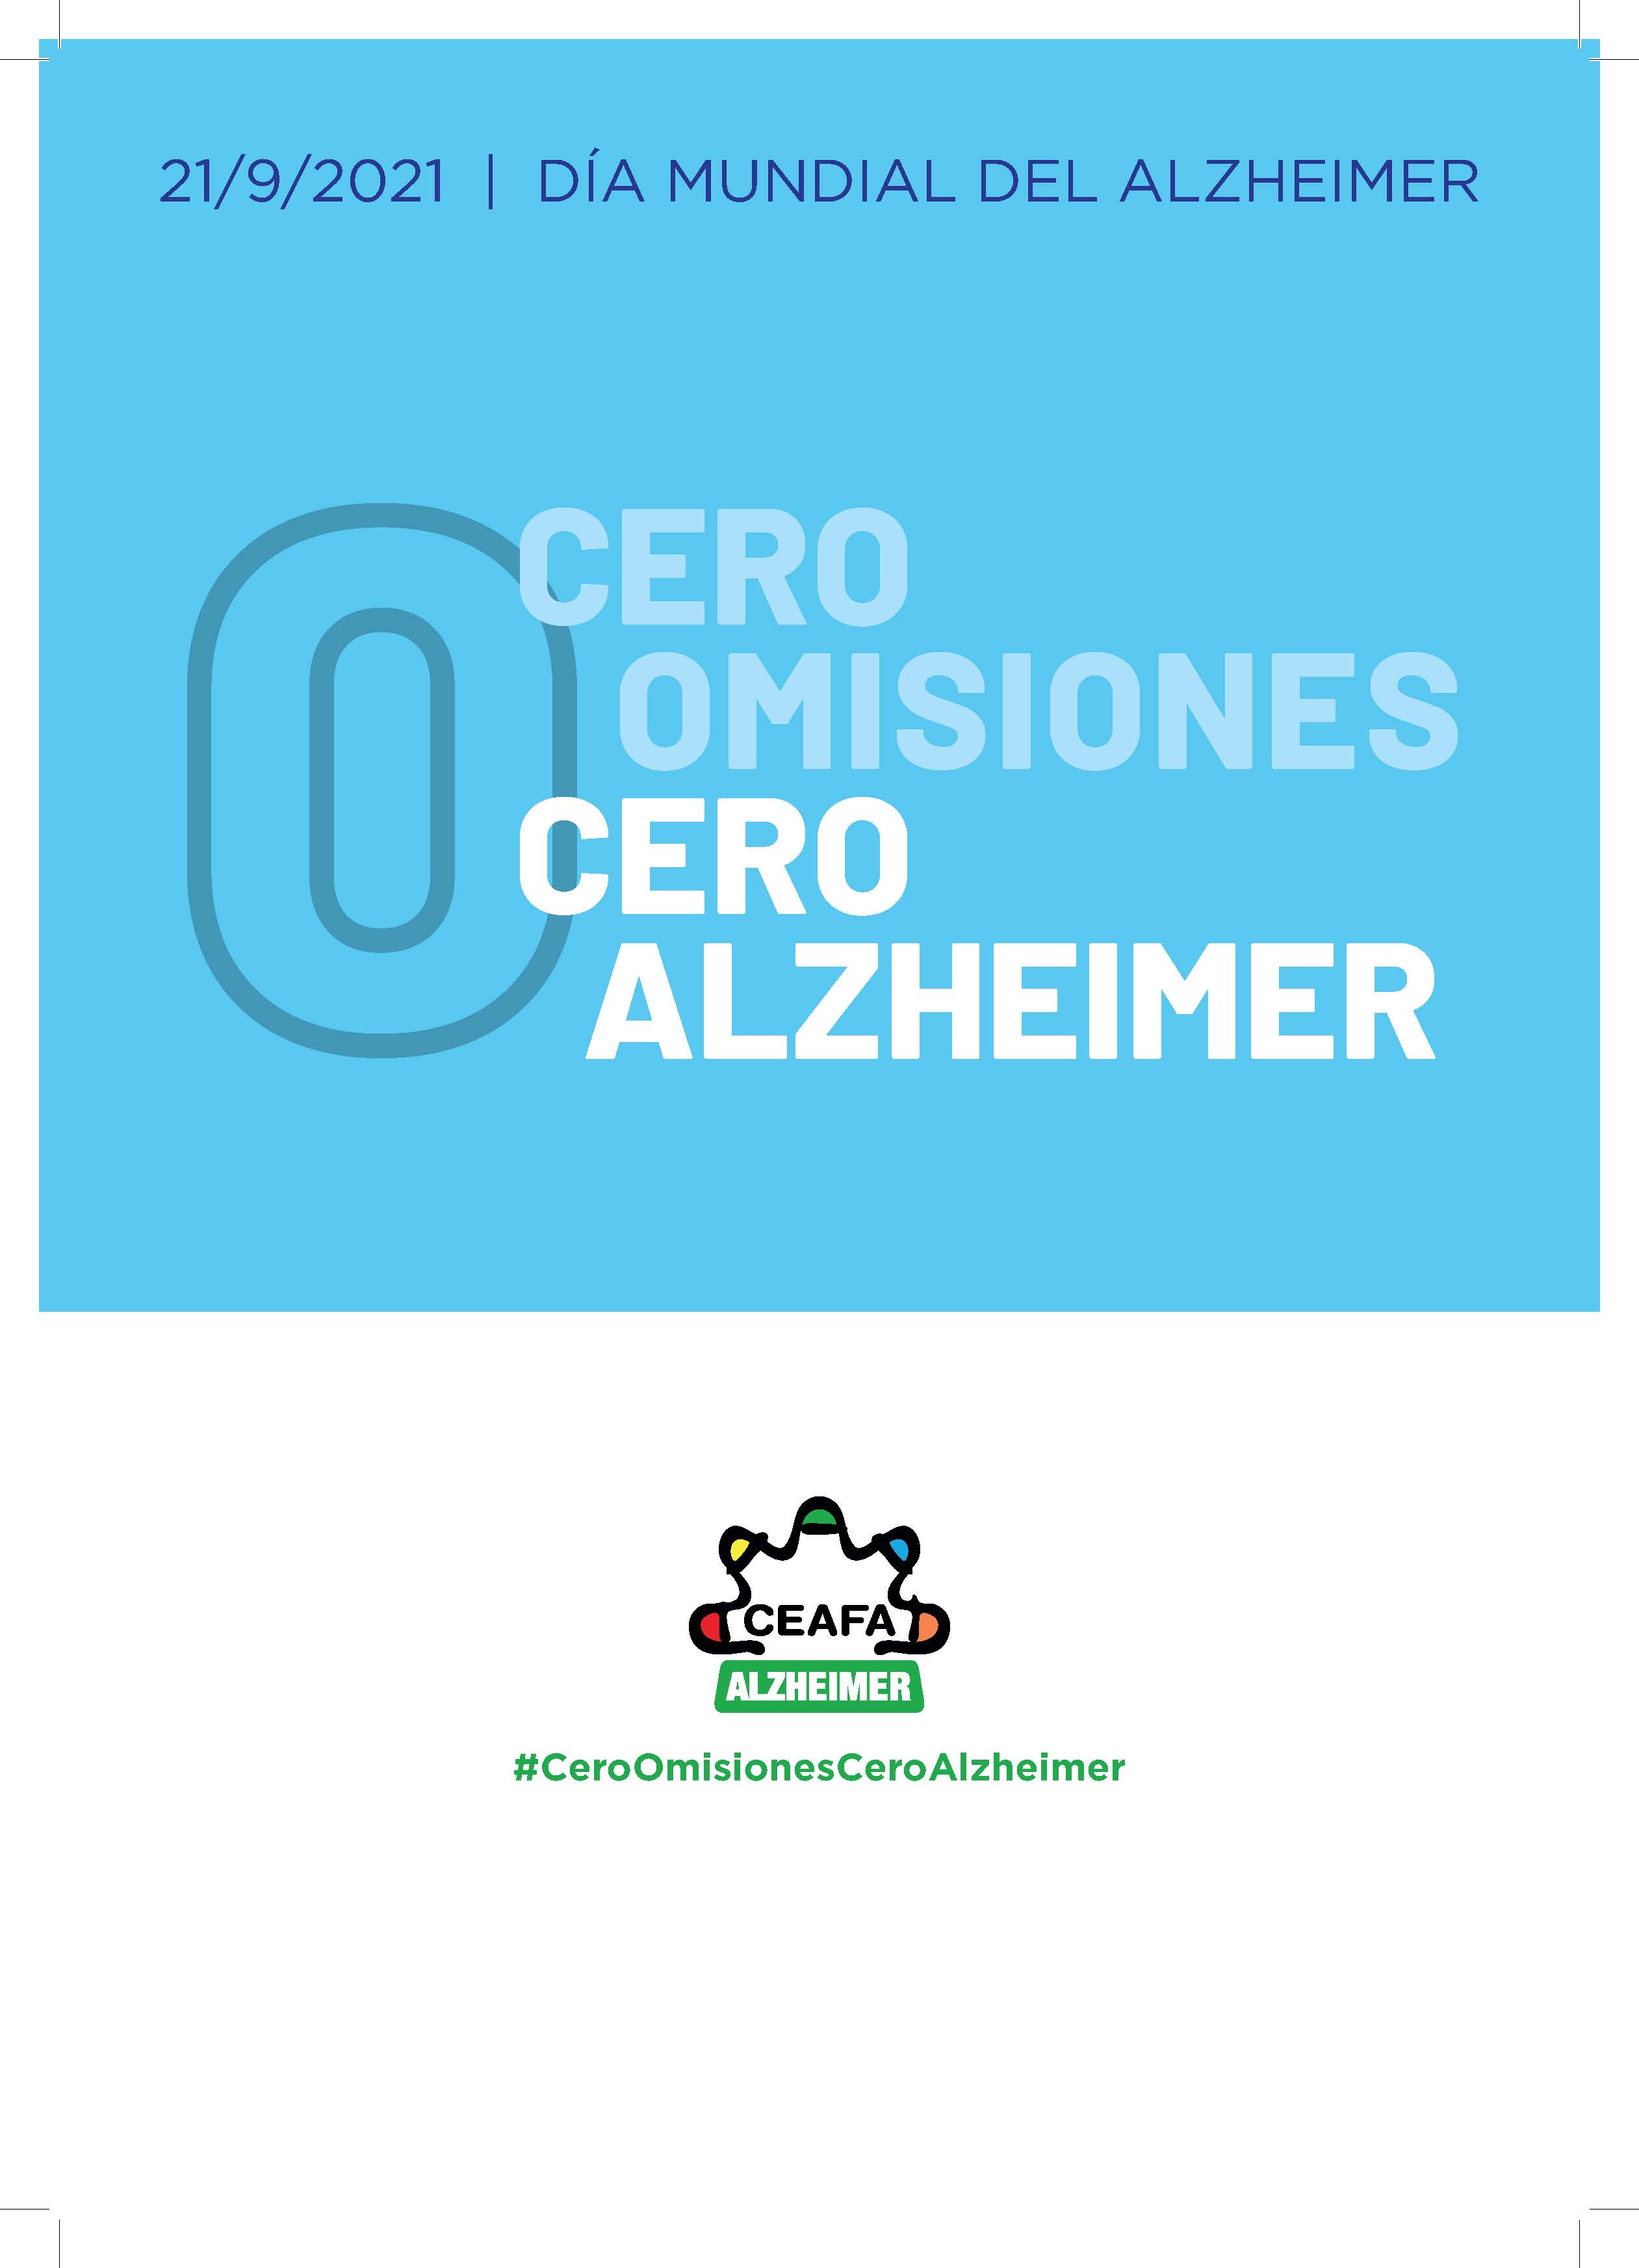 Actos día mundial de Alzheimer en Aragón